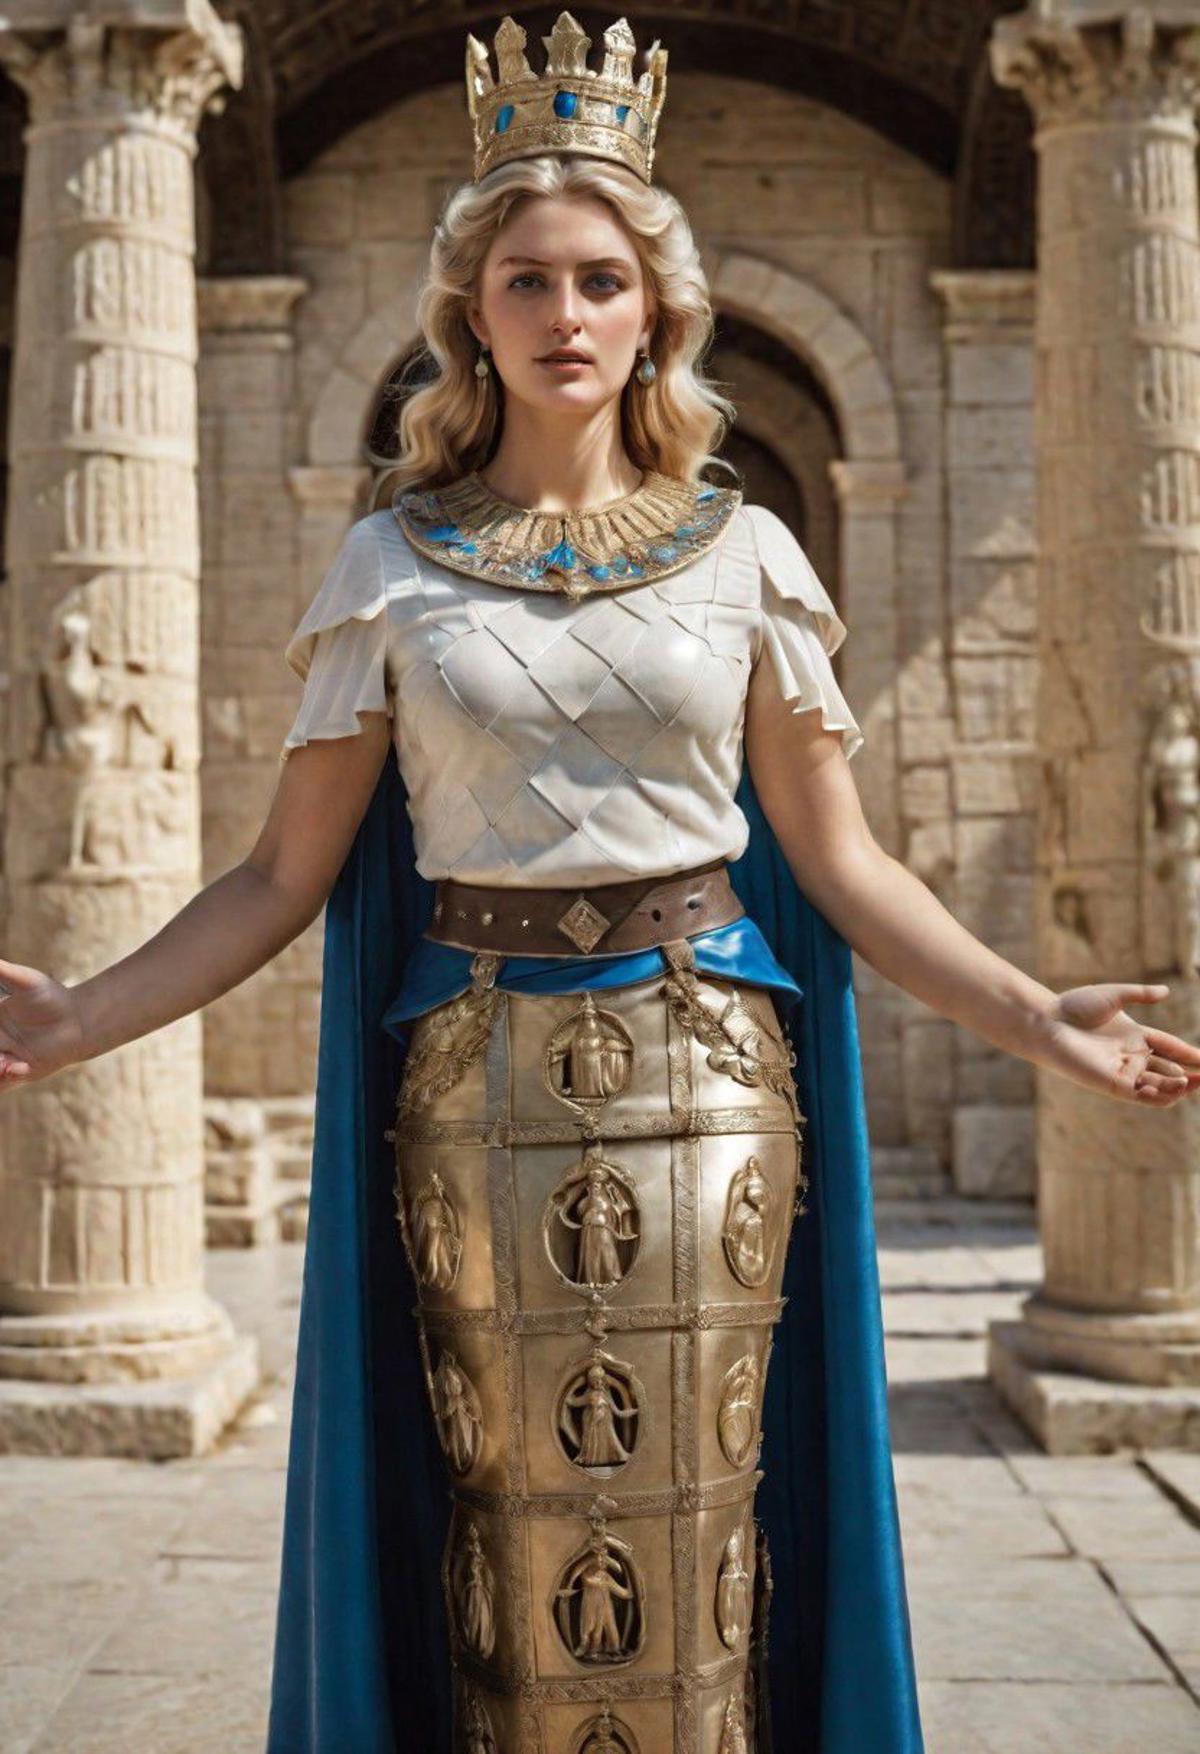 Artemis Ephesus image by cristianchirita749